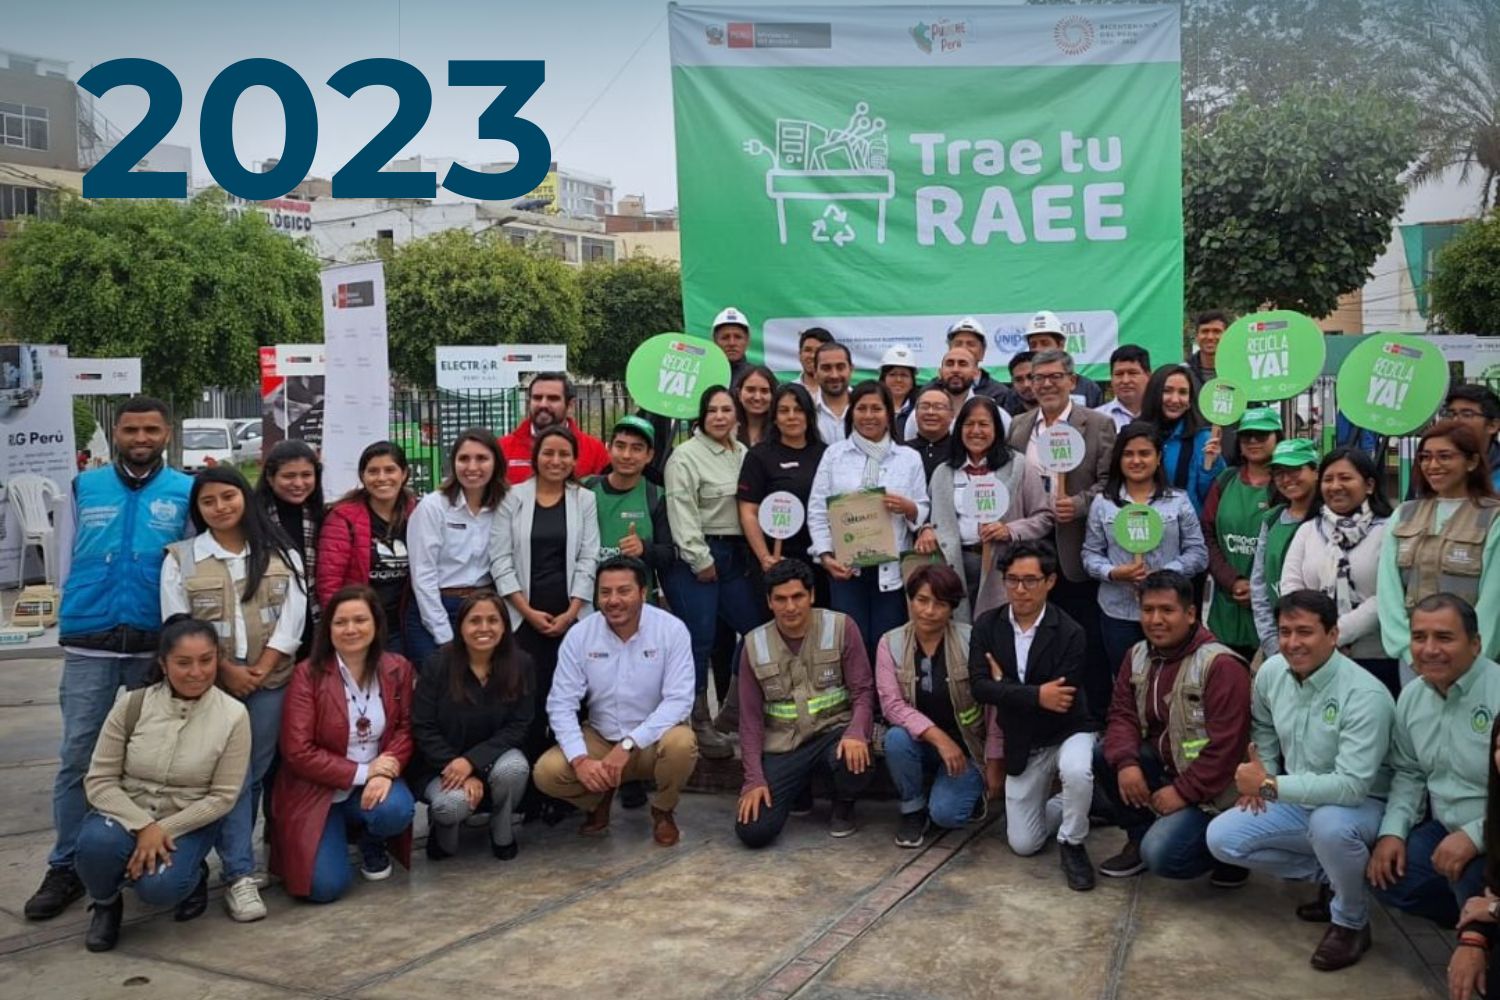 Un grupo de personas posa para una foto en un evento de reciclaje con una pancarta grande que dice "Trae tu RAEE" y carteles que promueven el reciclaje, con el número 2023 superpuesto en la imagen.